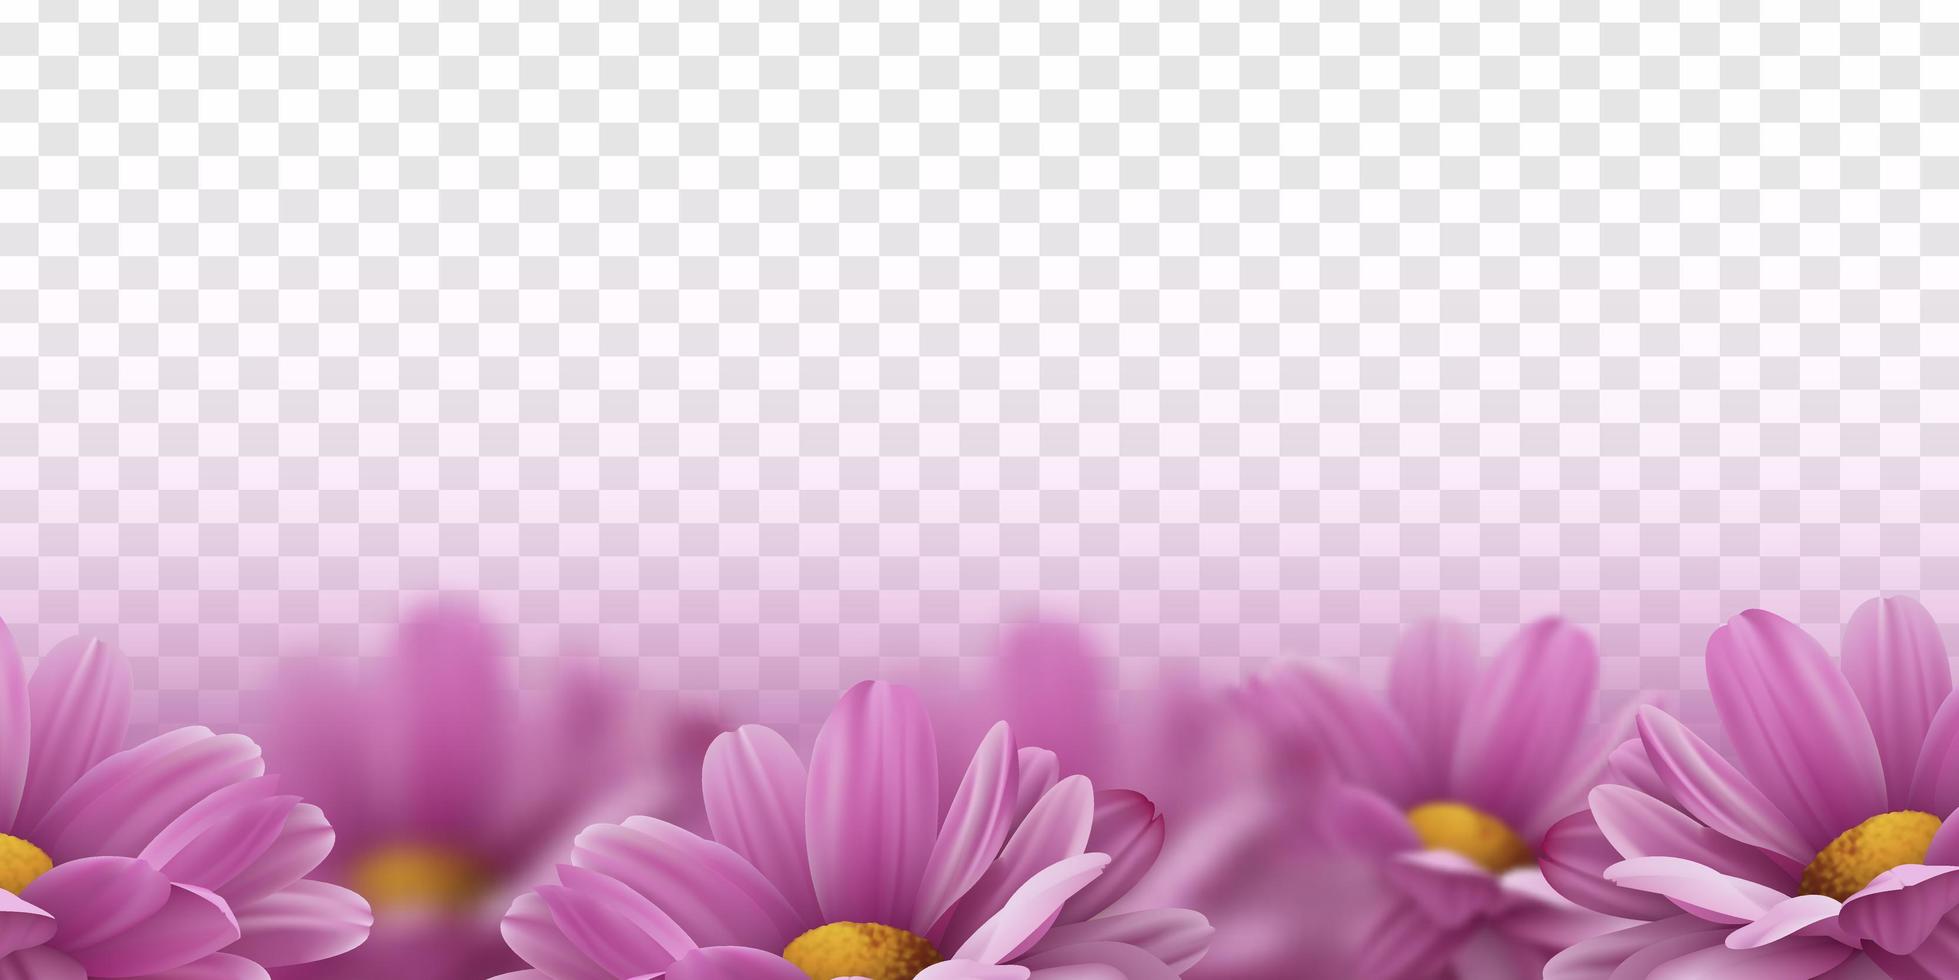 fiori di crisantemo rosa 3d realistici. illustrazione vettoriale